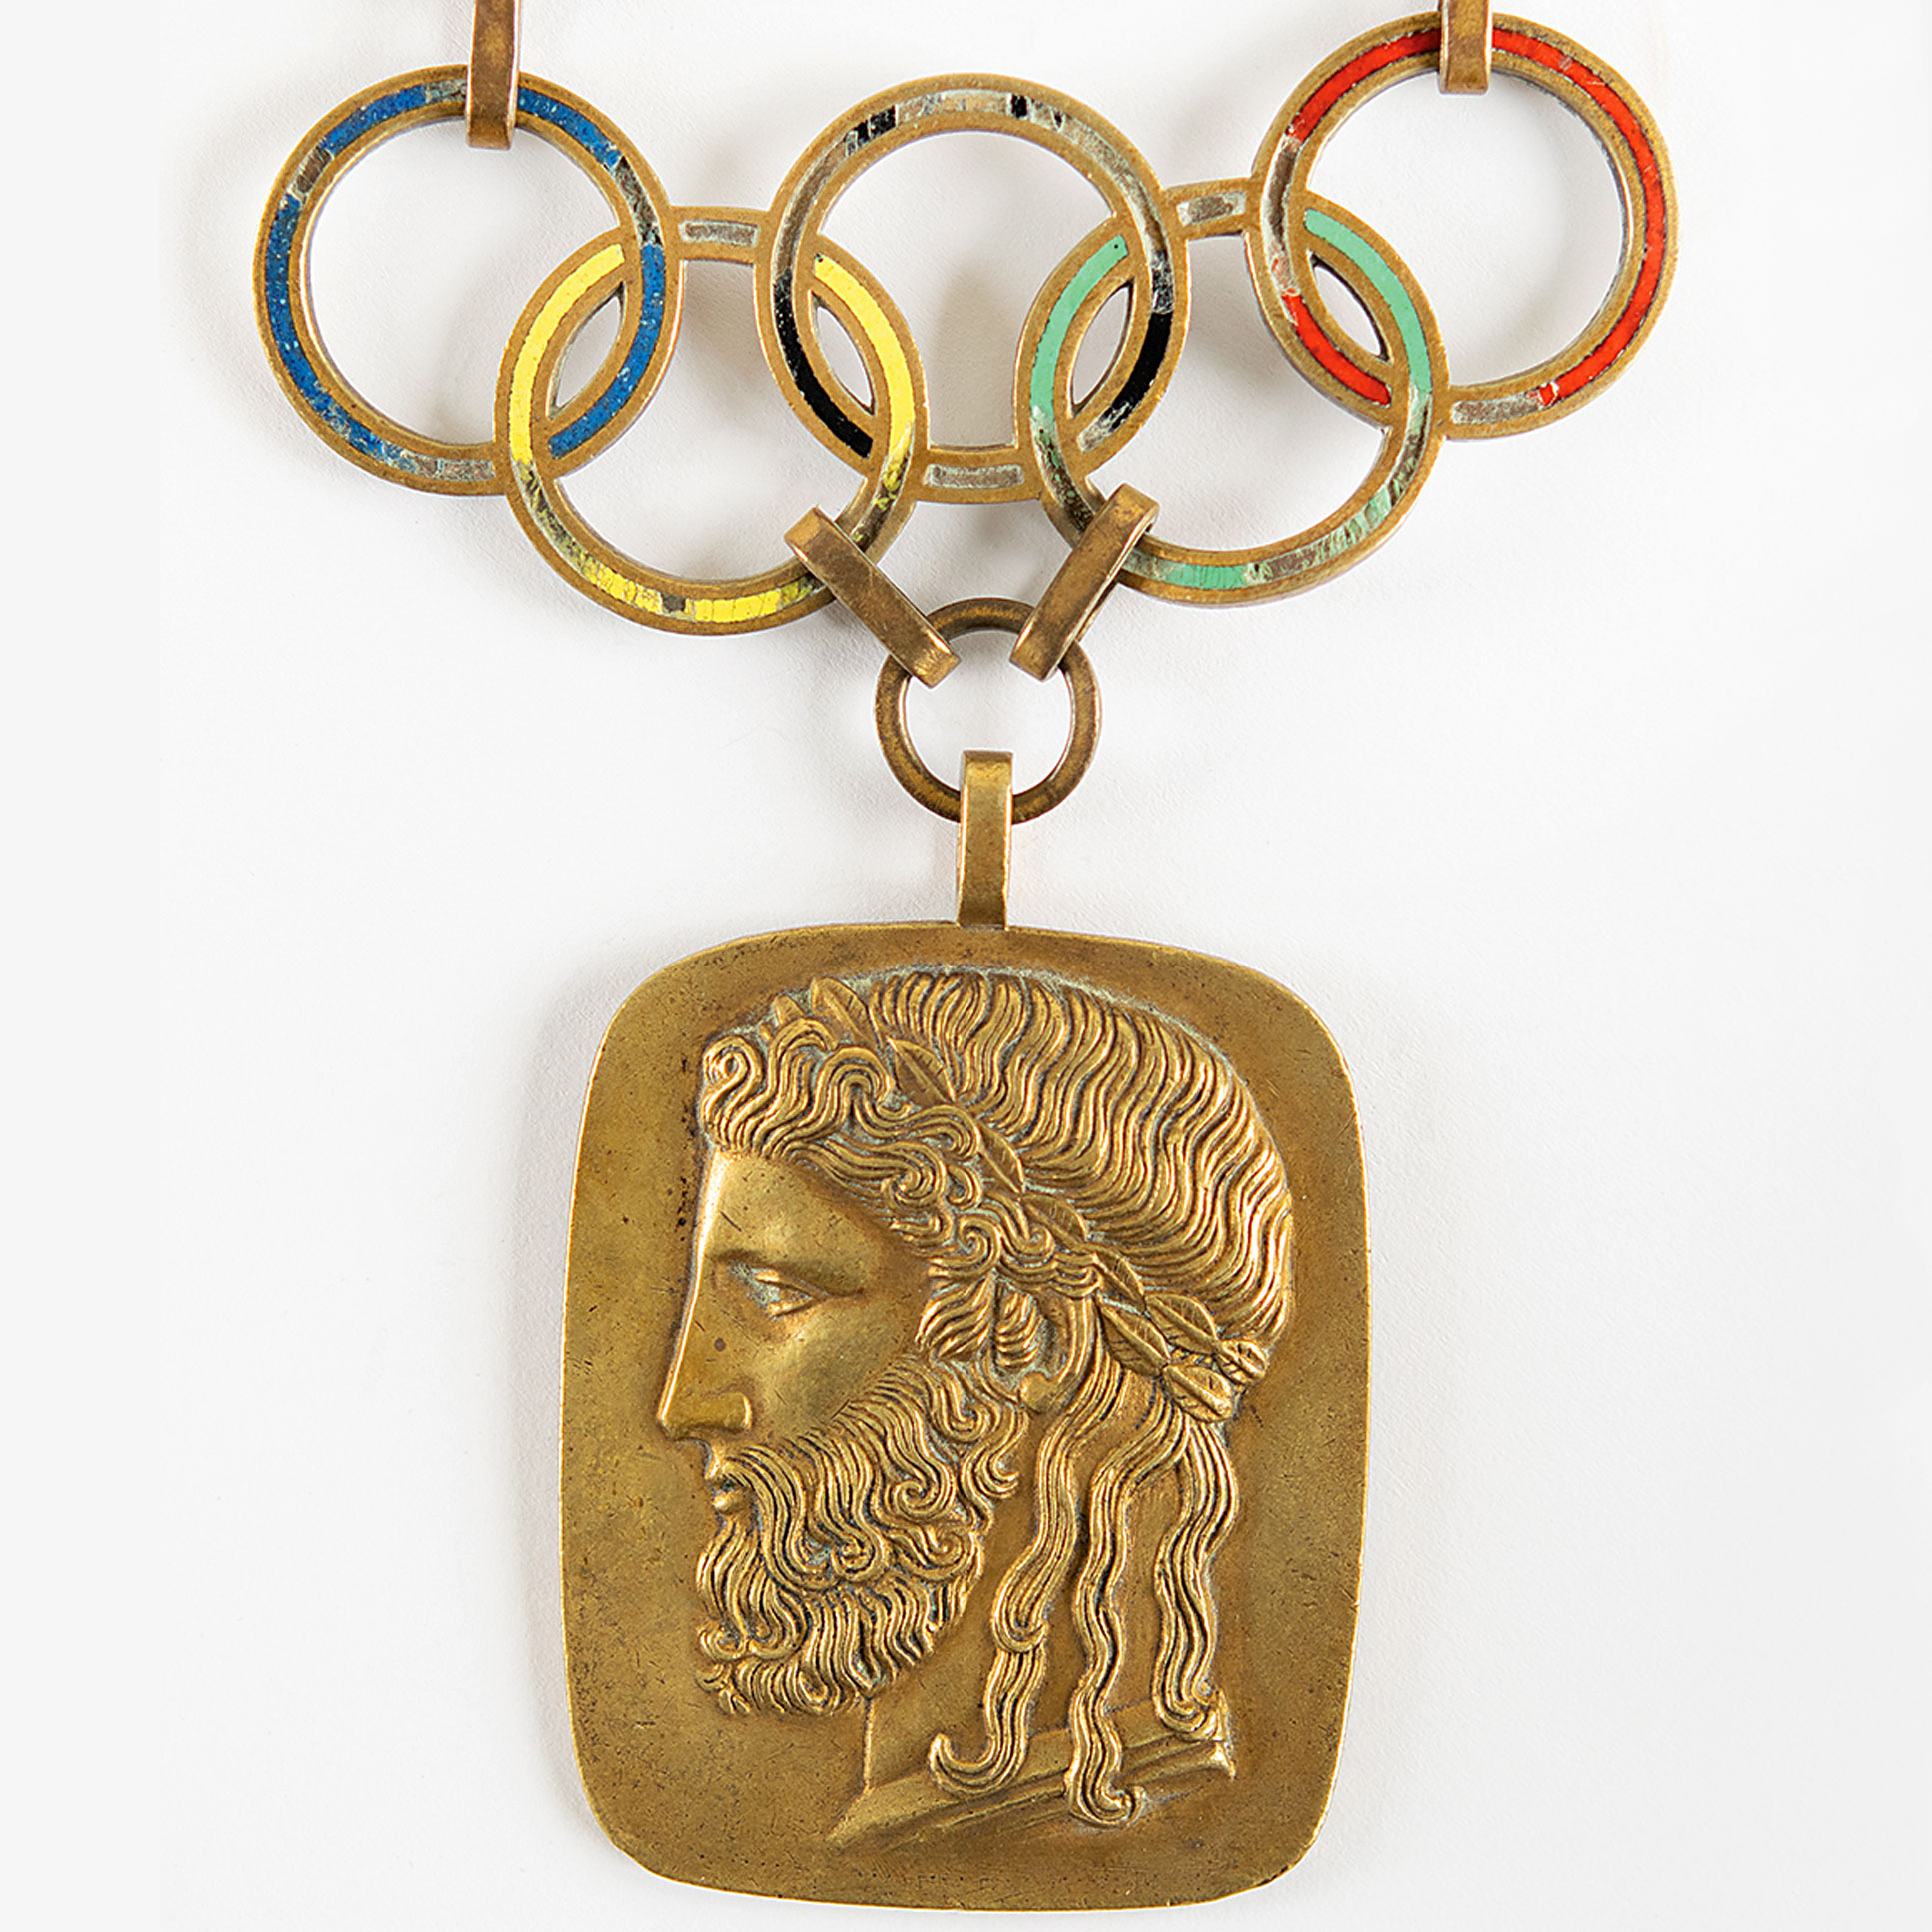 Le trésor étincelant des Jeux olympiques – du relais de la flamme aux médailles depuis les premiers Jeux modernes – se dirige vers les enchères